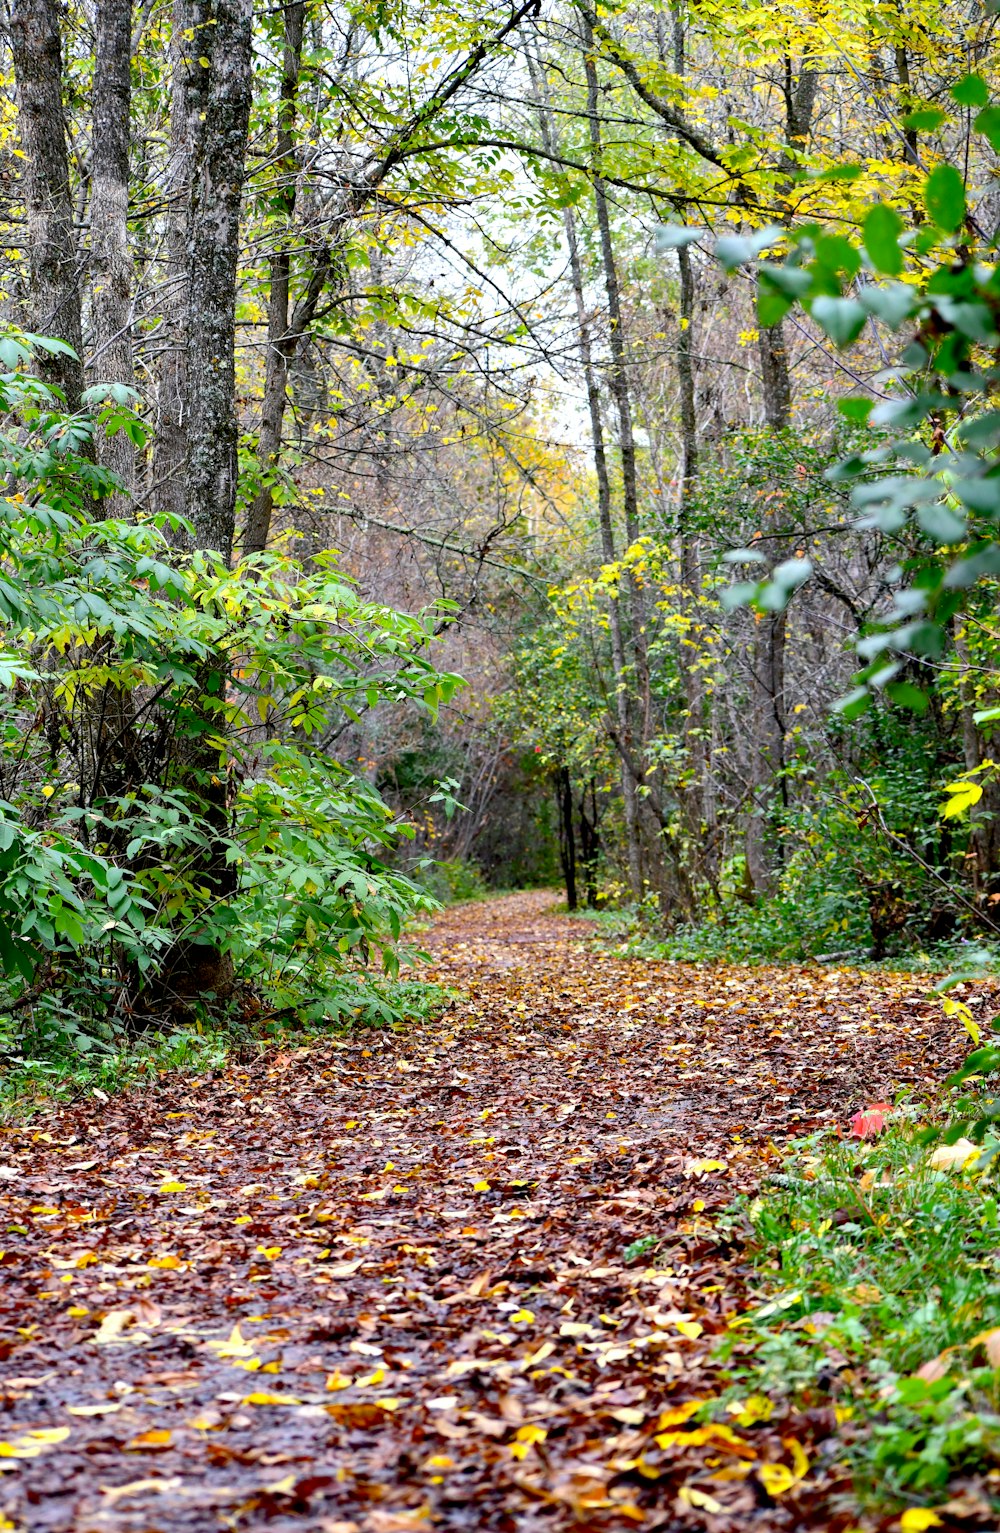 Un chemin dans les bois avec beaucoup de feuilles au sol